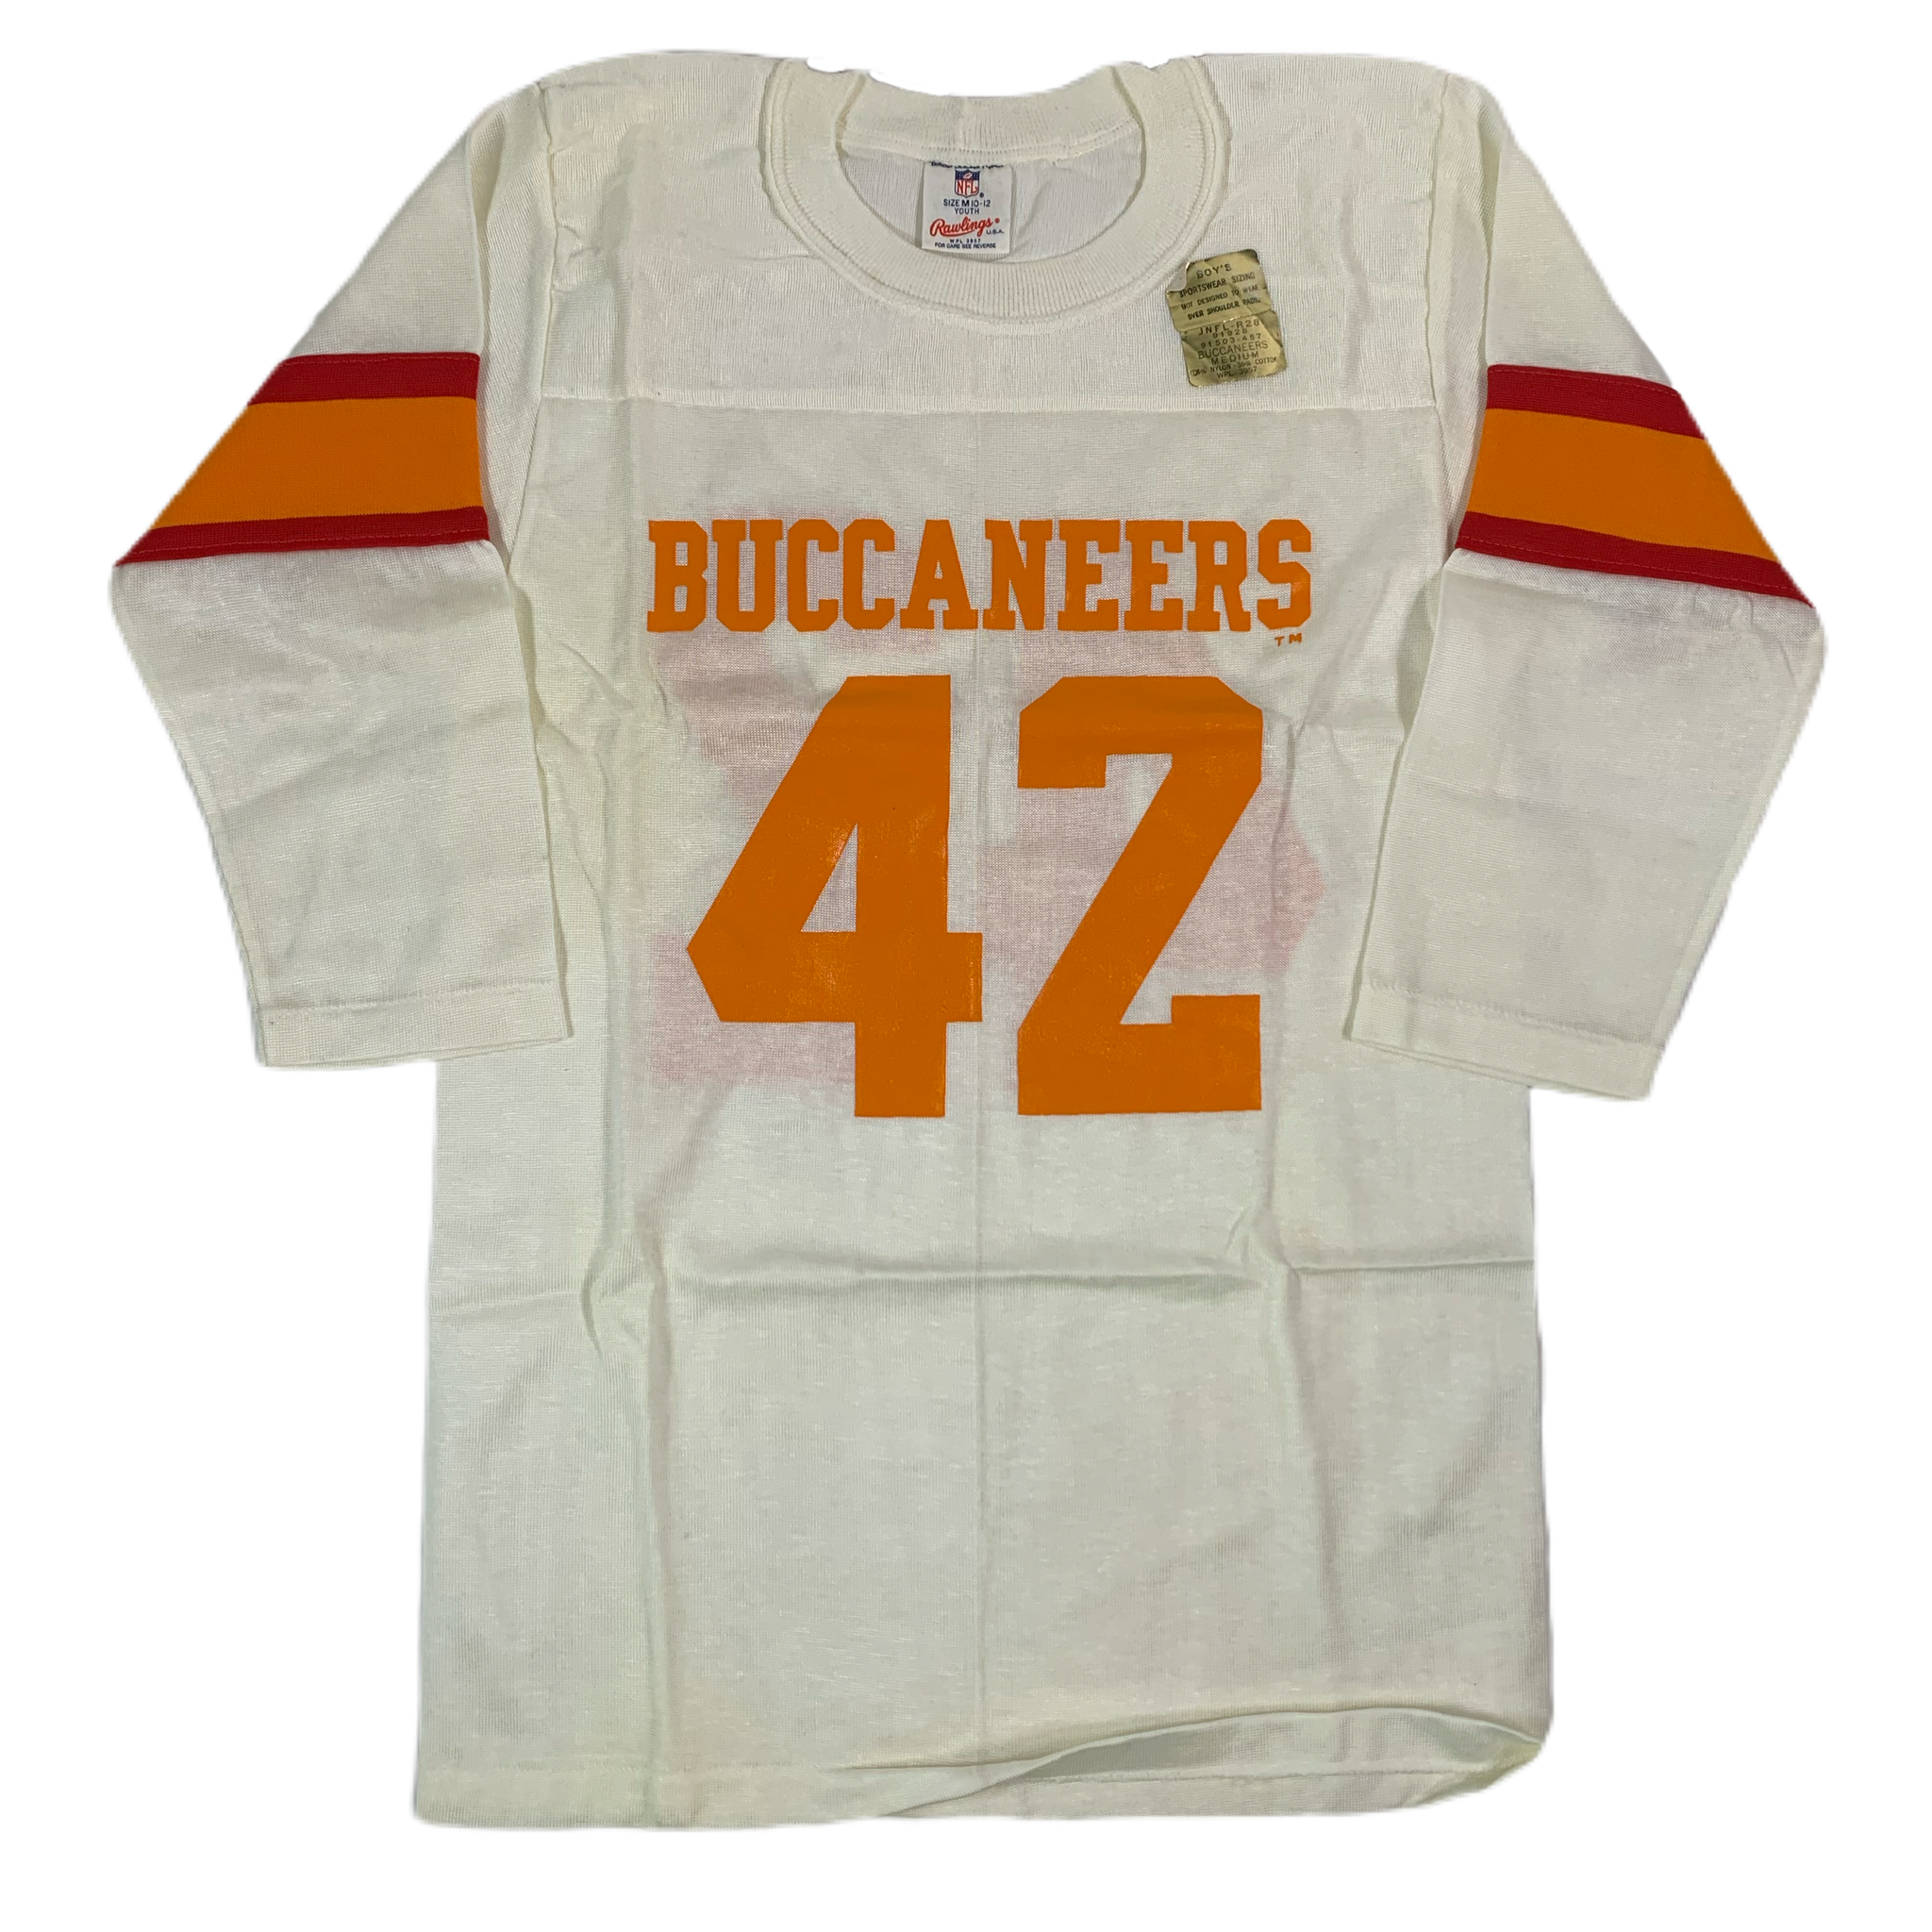 buccaneers jersey shirt